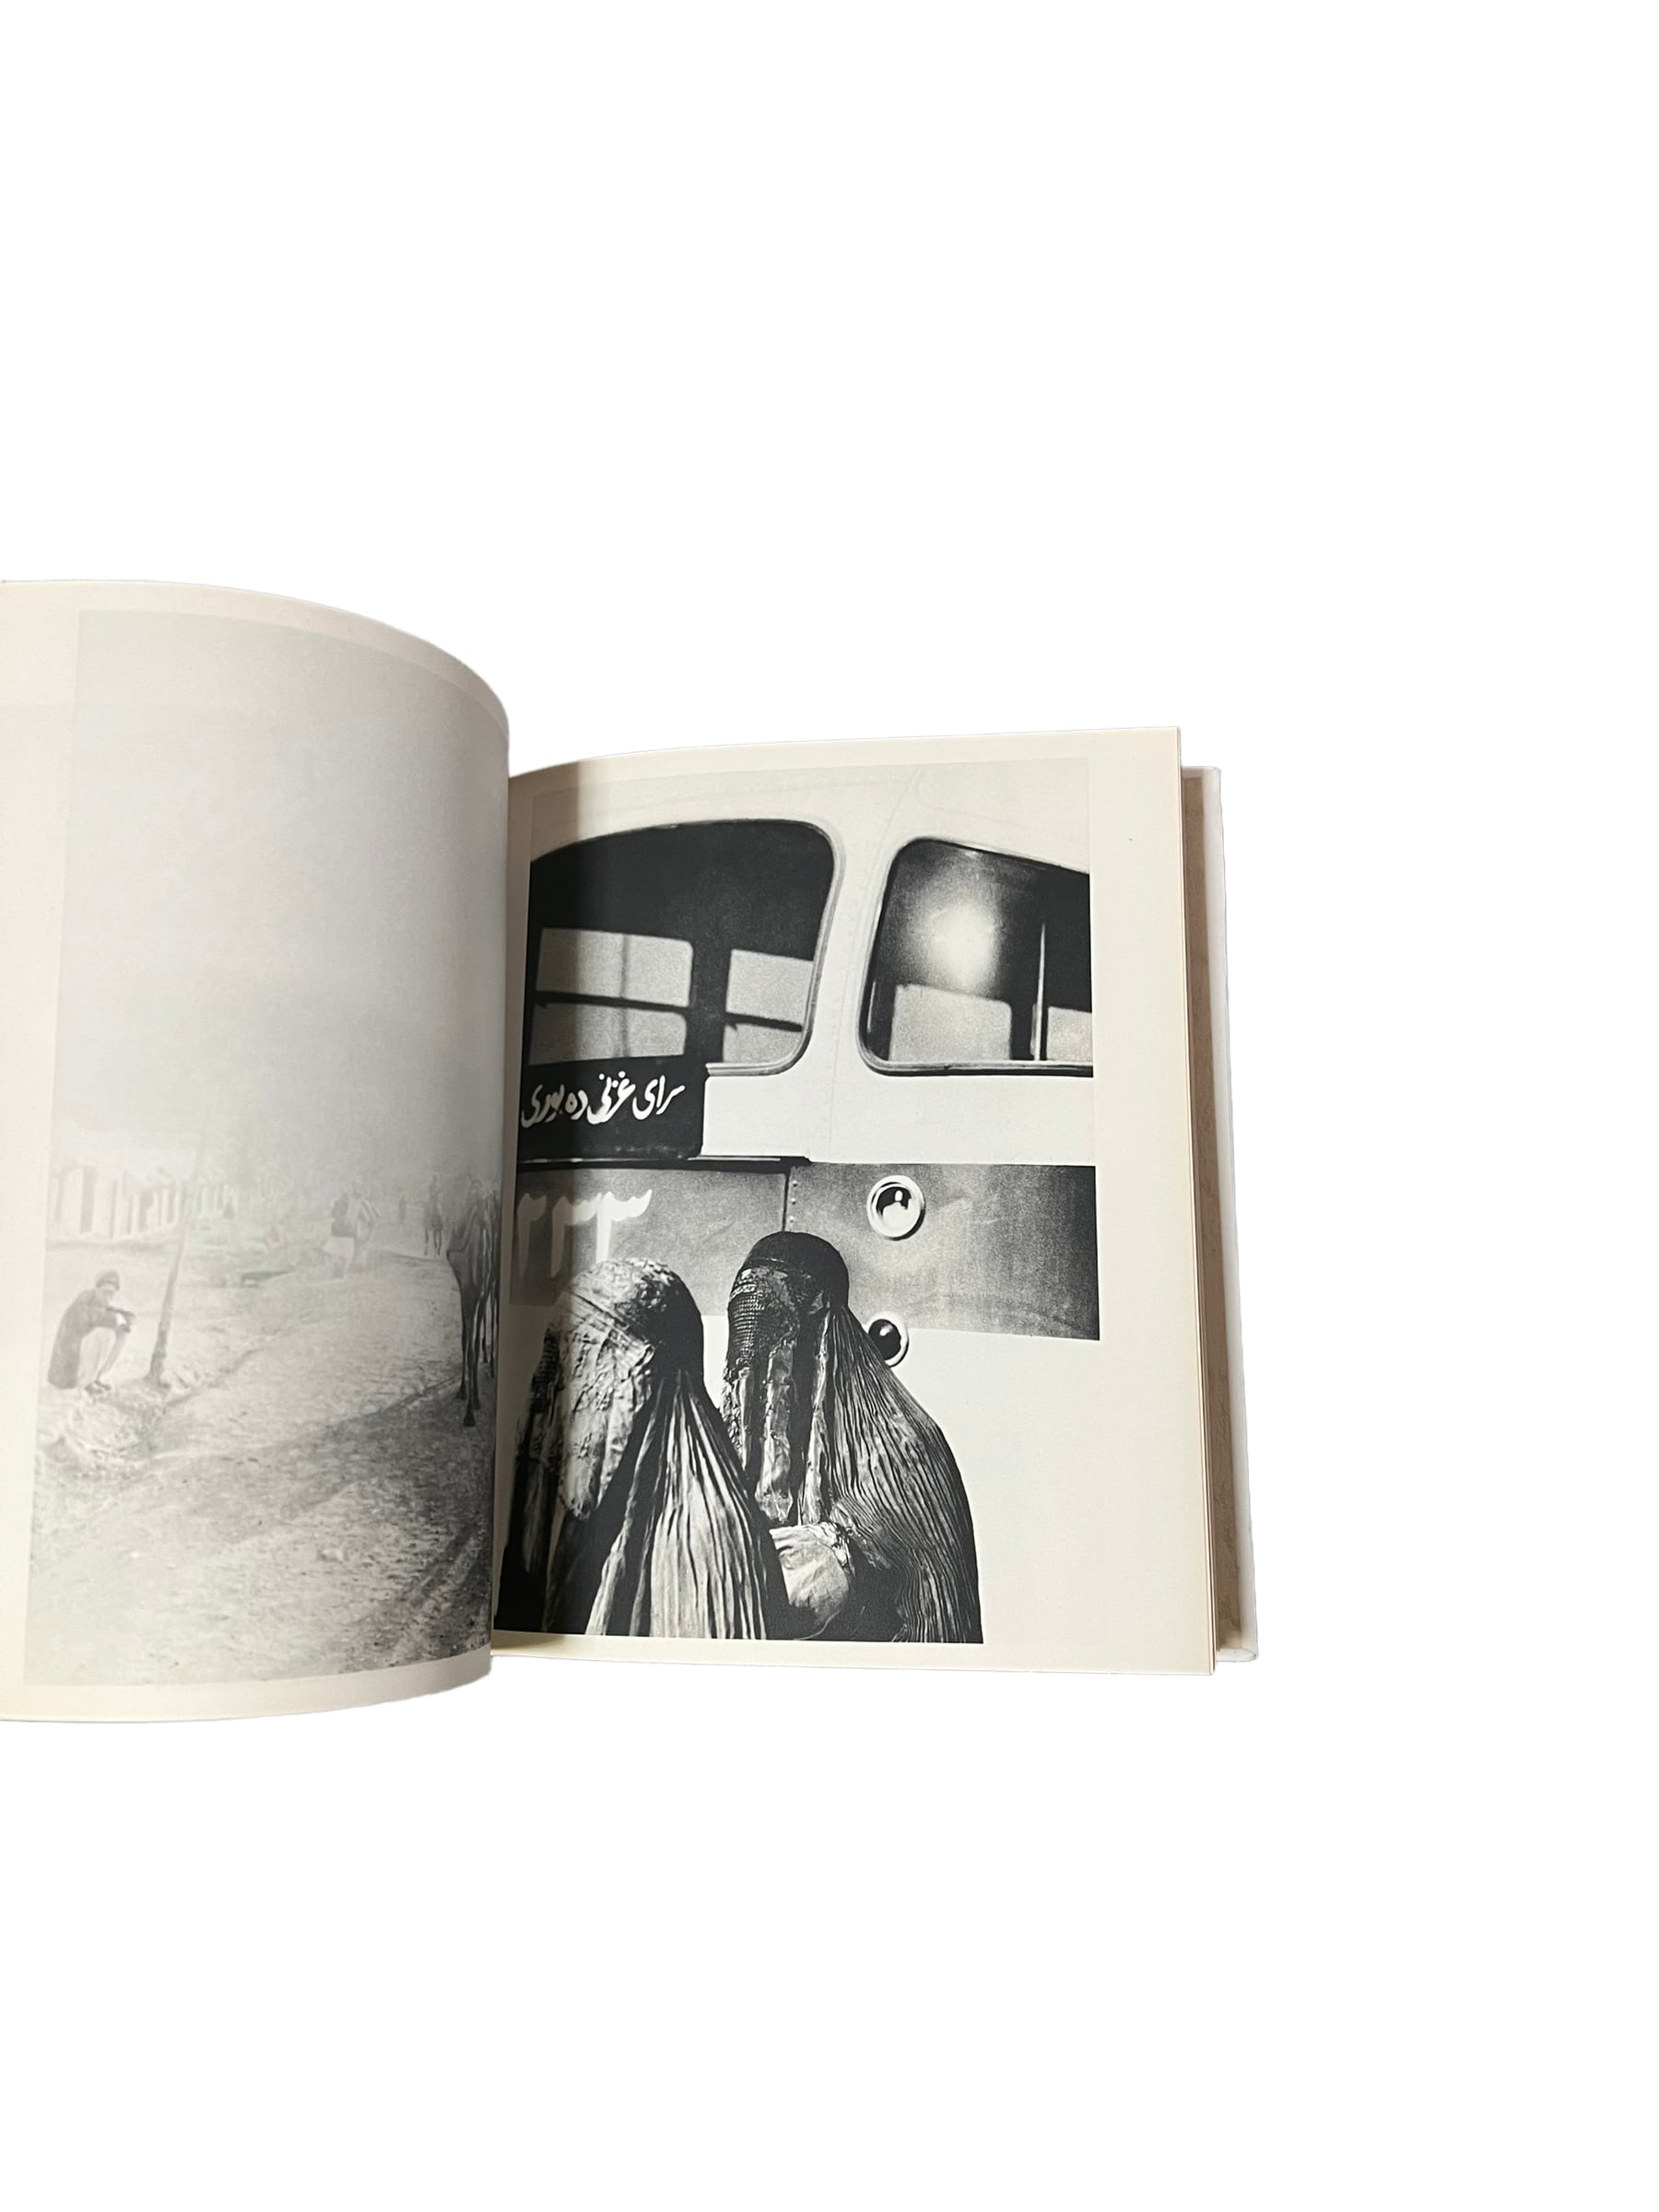 サラーム・アレイコム】東松照明写真集 初版 1968年 写研 古書 古本